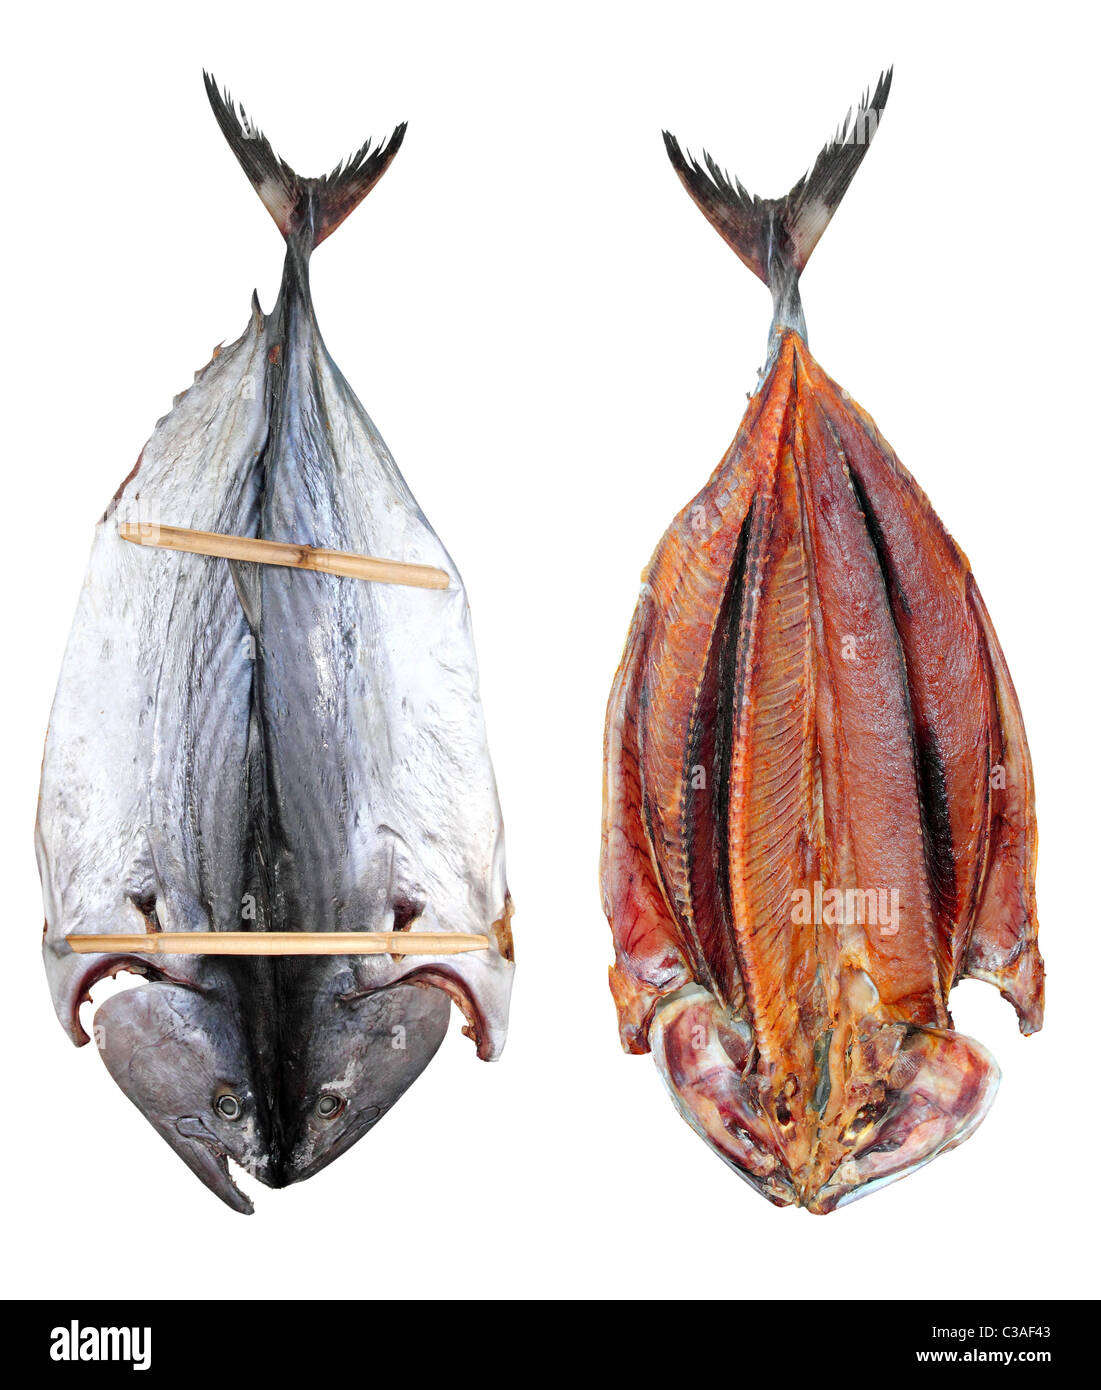 Bonito Thunfisch gesalzen Trockenfisch Mediteraranean Sarda Stil Stockfoto